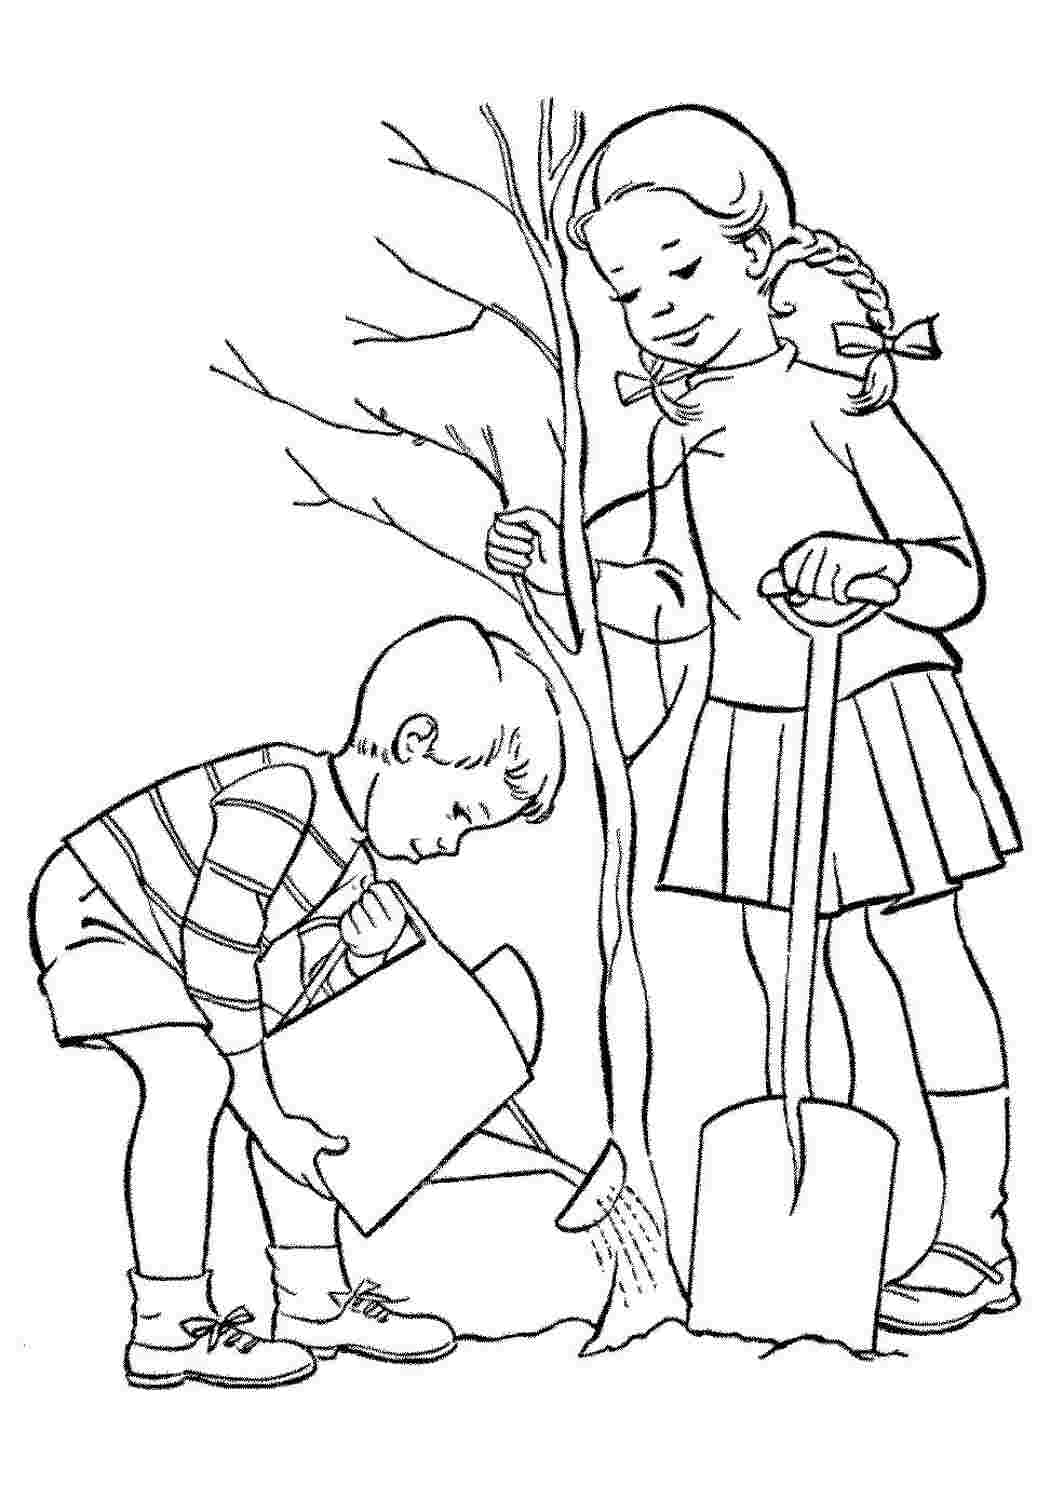 Раскраски Девочка и мальчик сажают дерево. Раскраска для печати. Девочка и мальчик сажают дерево. Раскраска.